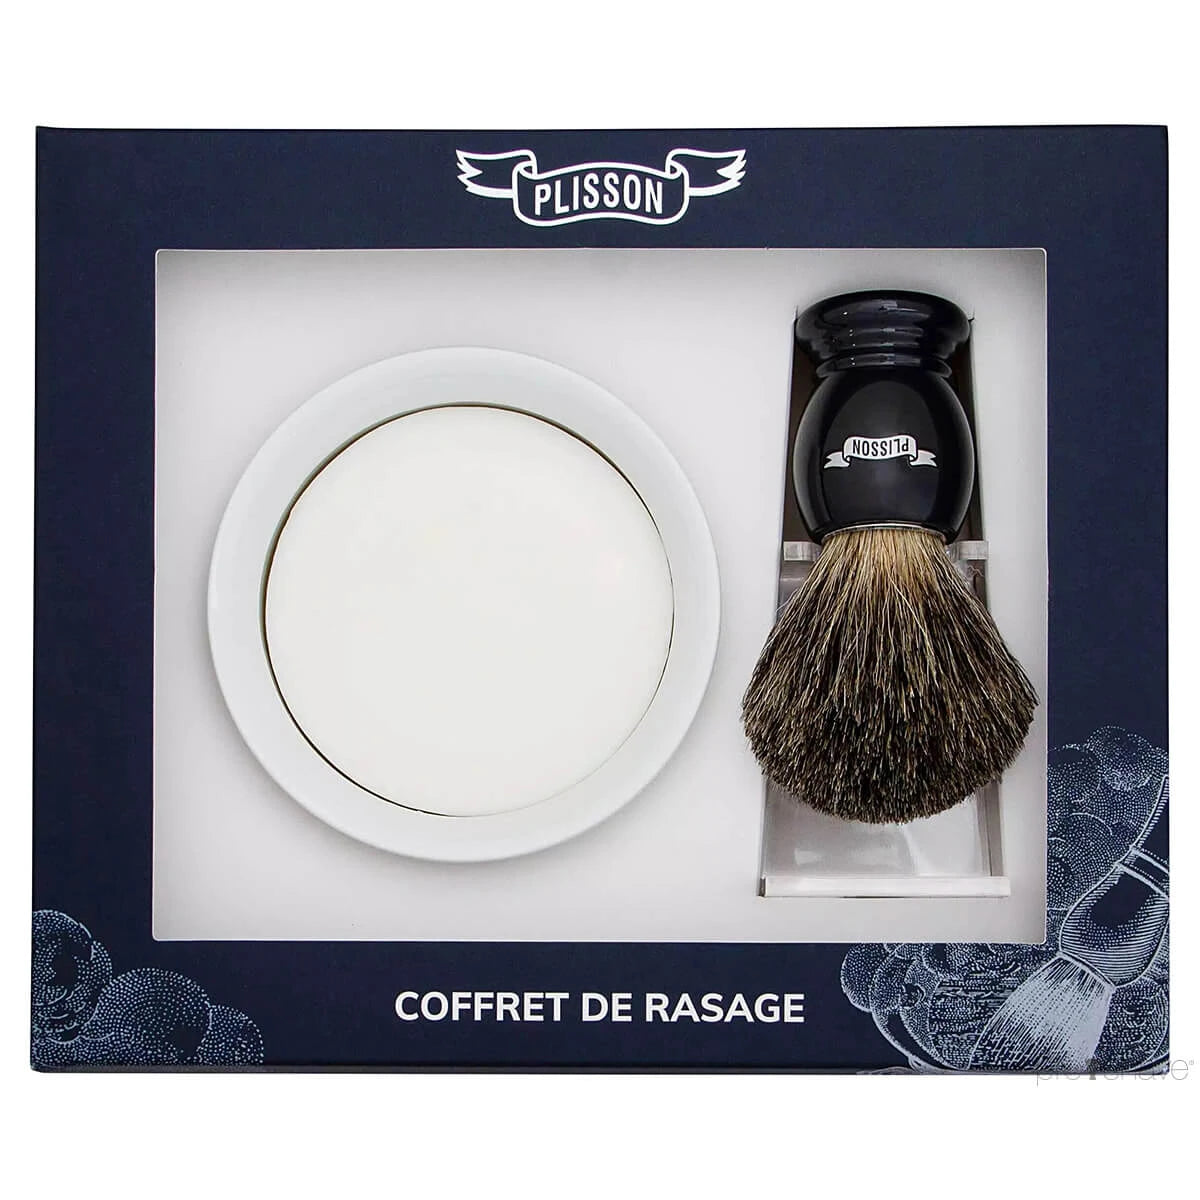 Plisson Starter Kit, Russian Grey Badger & Shaving Bowl W/Soap